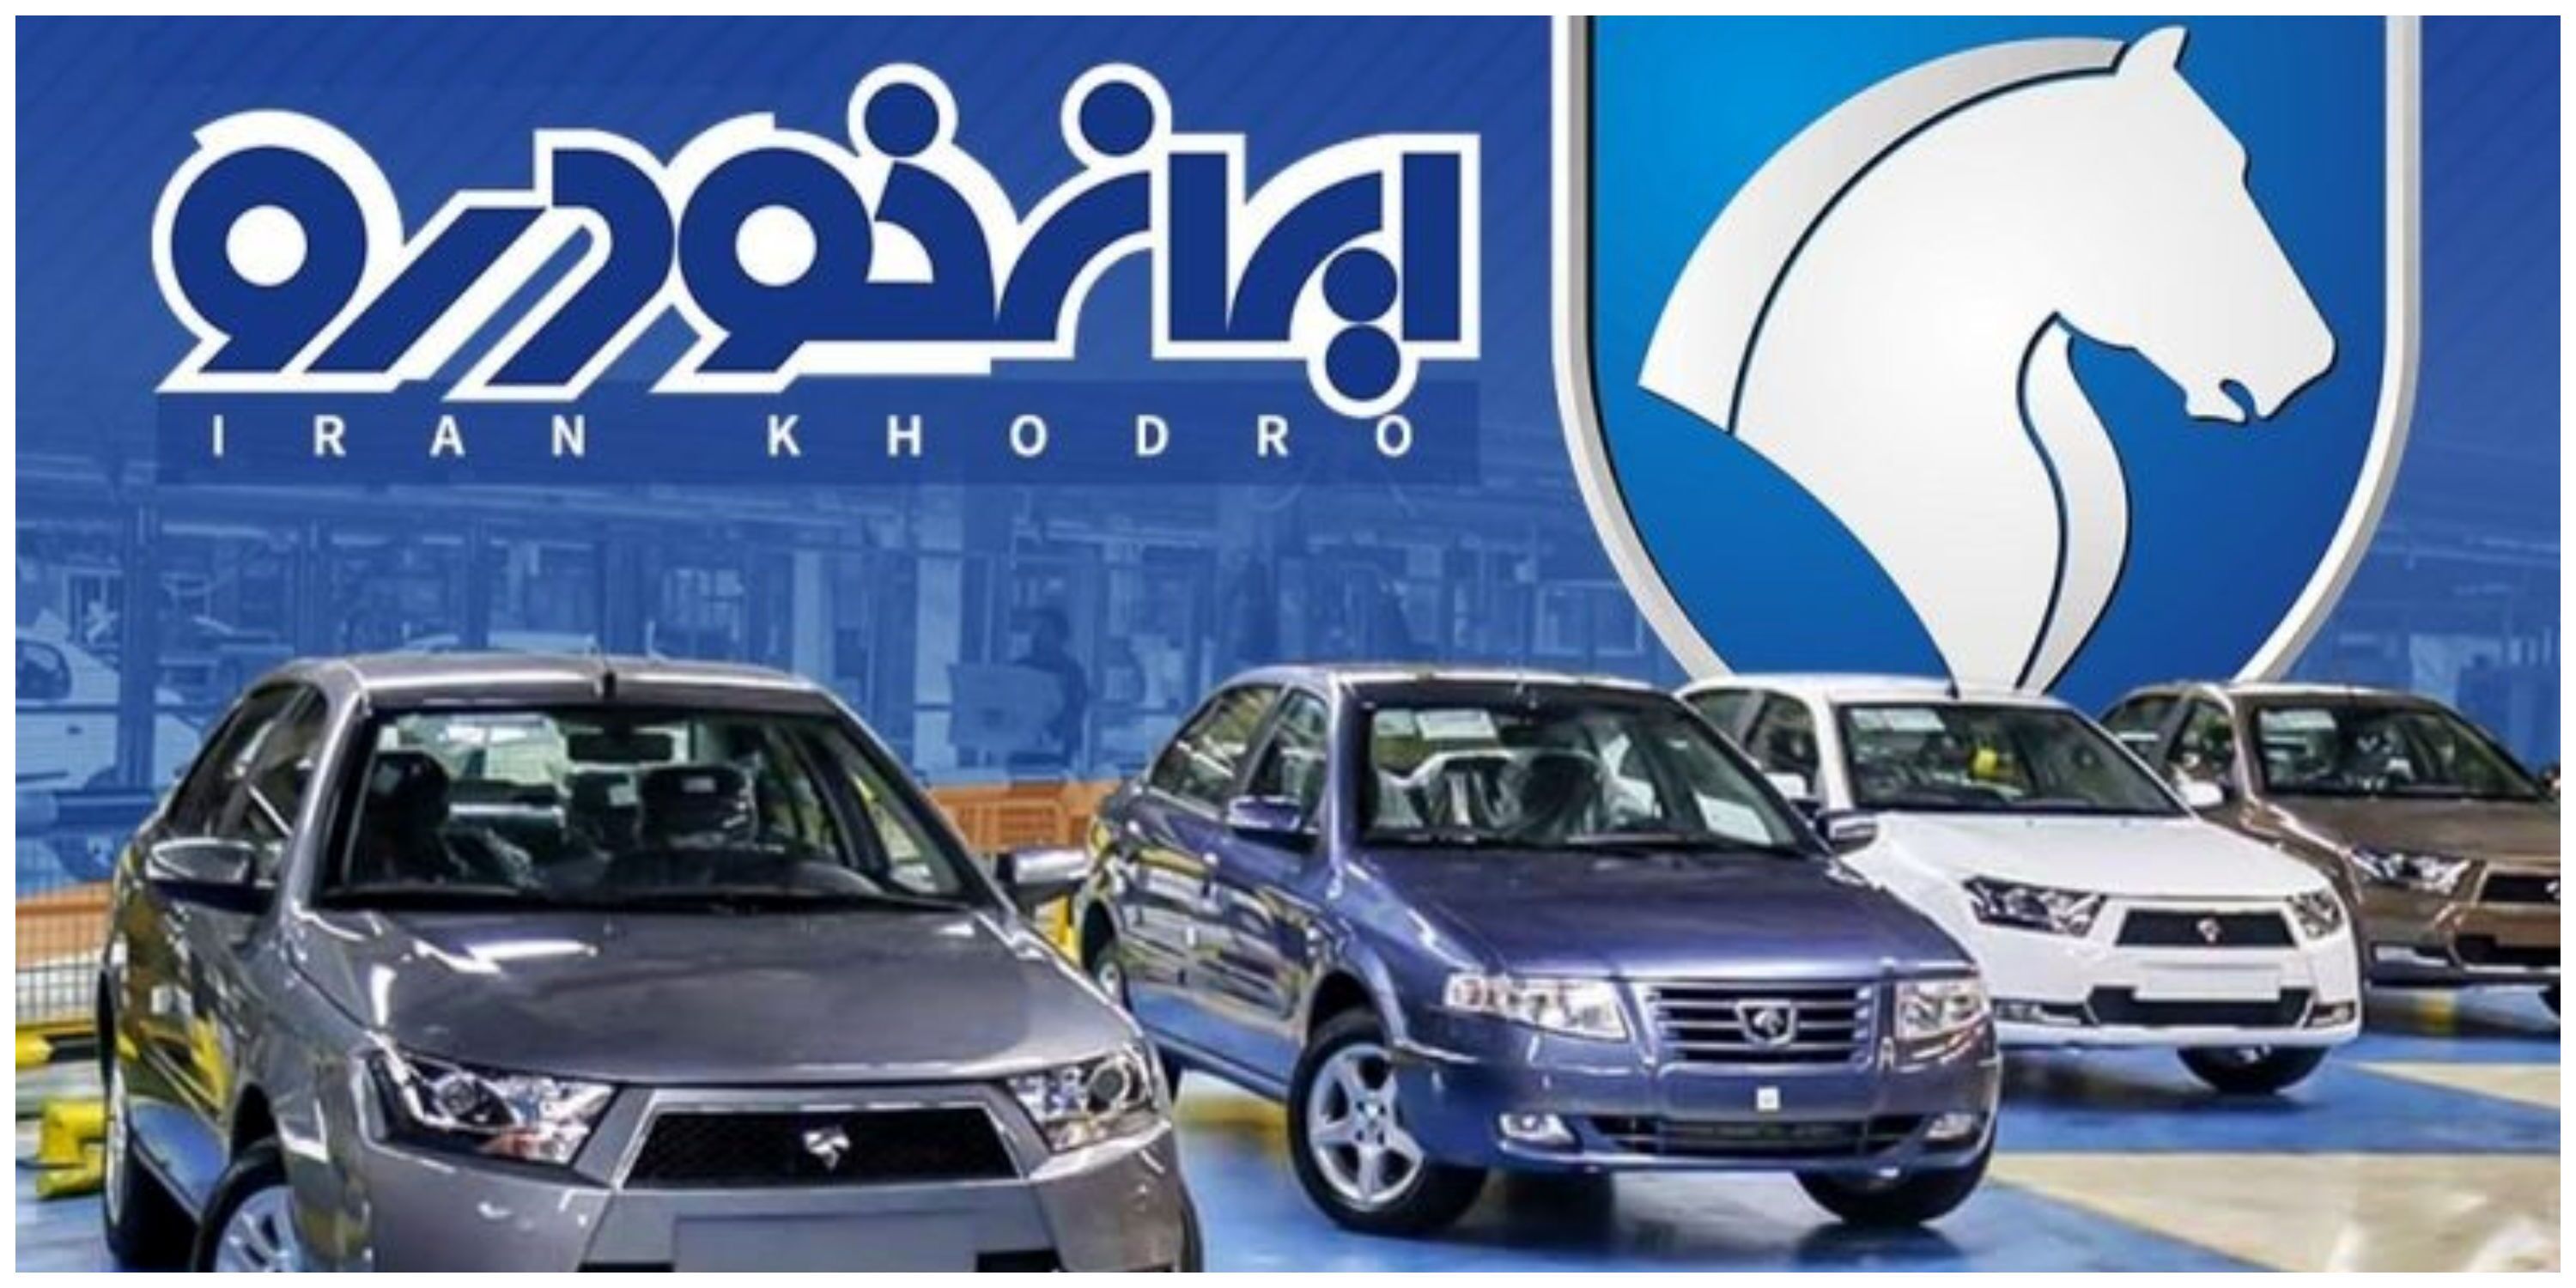 فروش ۳۵ مدل خودرو با پرداخت ۱۰۰ میلیون تومان /طرح ویژه ایران خودرو استارت خورد